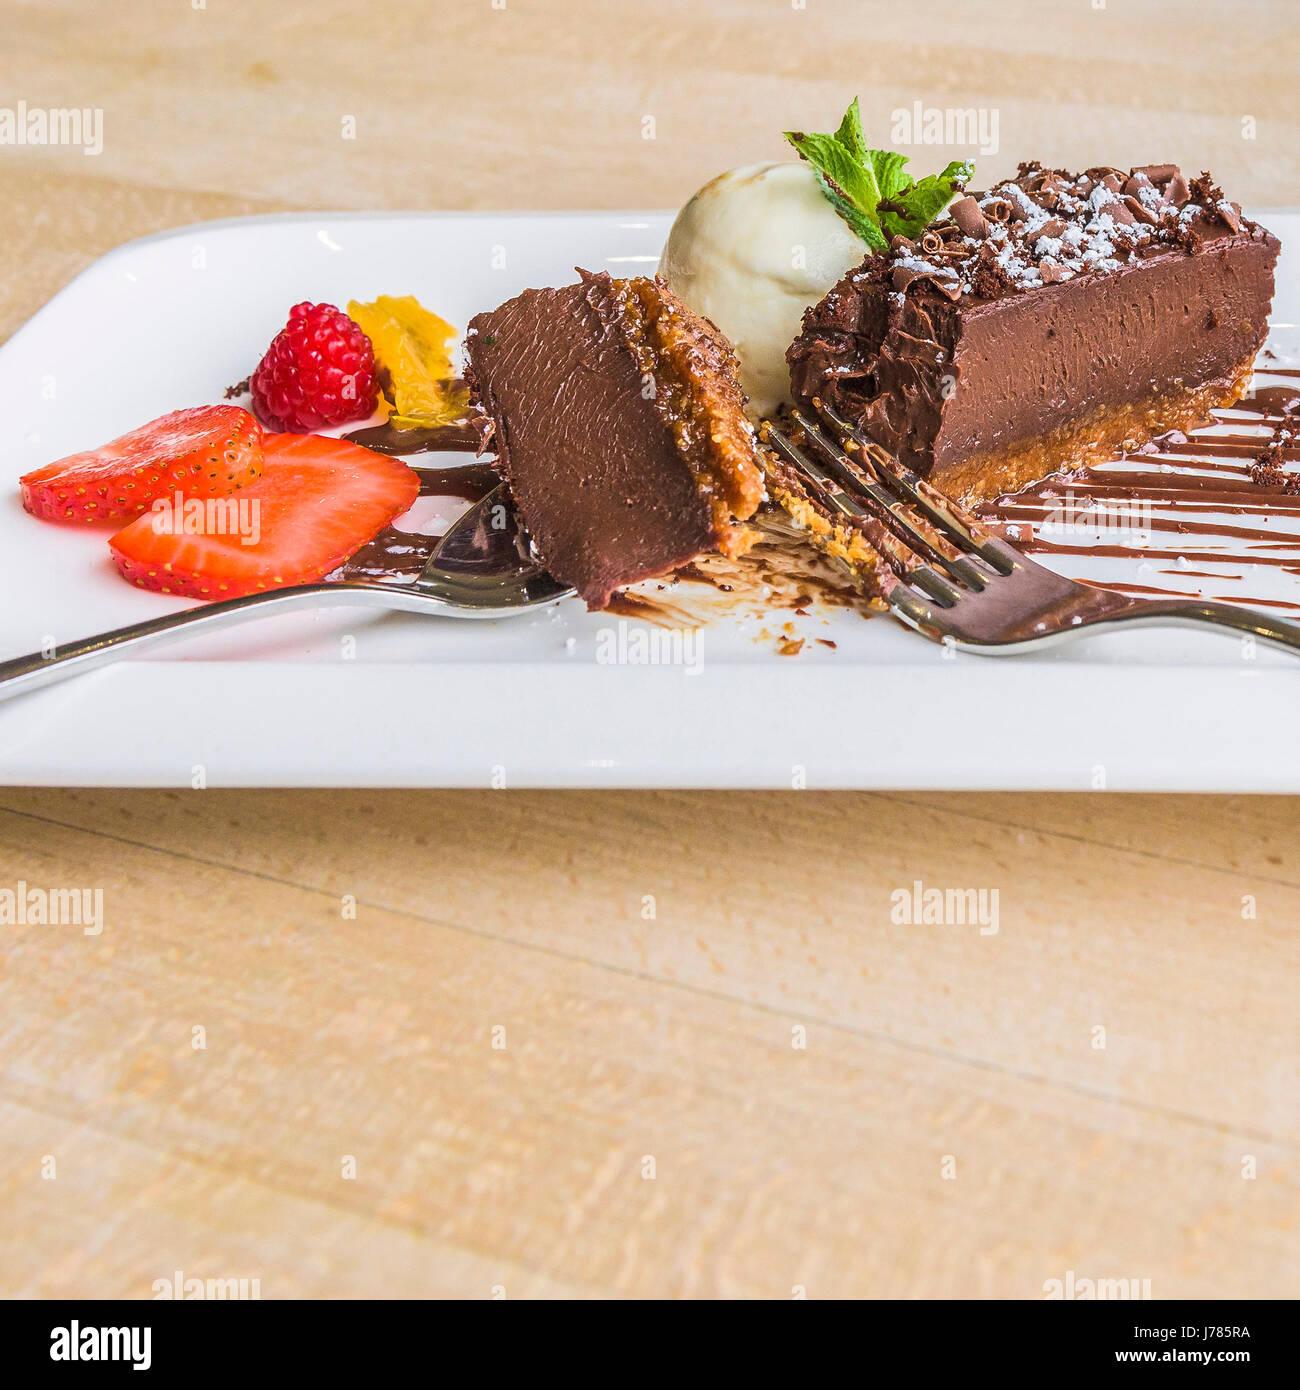 Schokolade Delice mit Vanille-Eis; Pudding; Süße; Interieur des Restaurants; Essen; Nachsicht; Luxus; Luxuriöse; Zu behandeln; Gericht; Appetitliche; Appetitlich Stockfoto